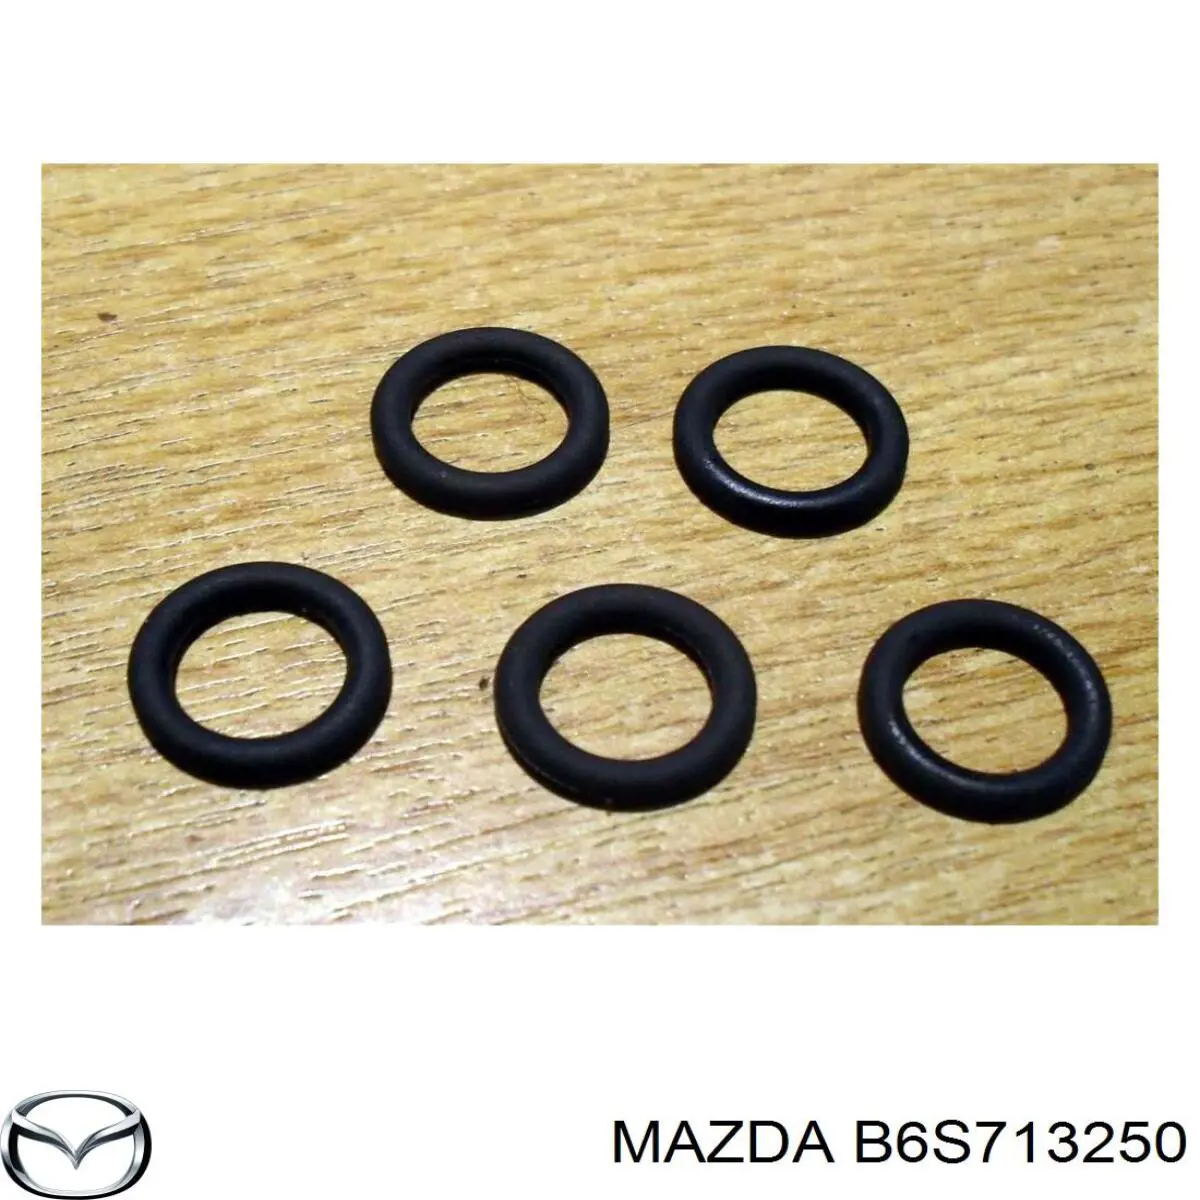 Injetor de injeção de combustível para Mazda 626 (GD)